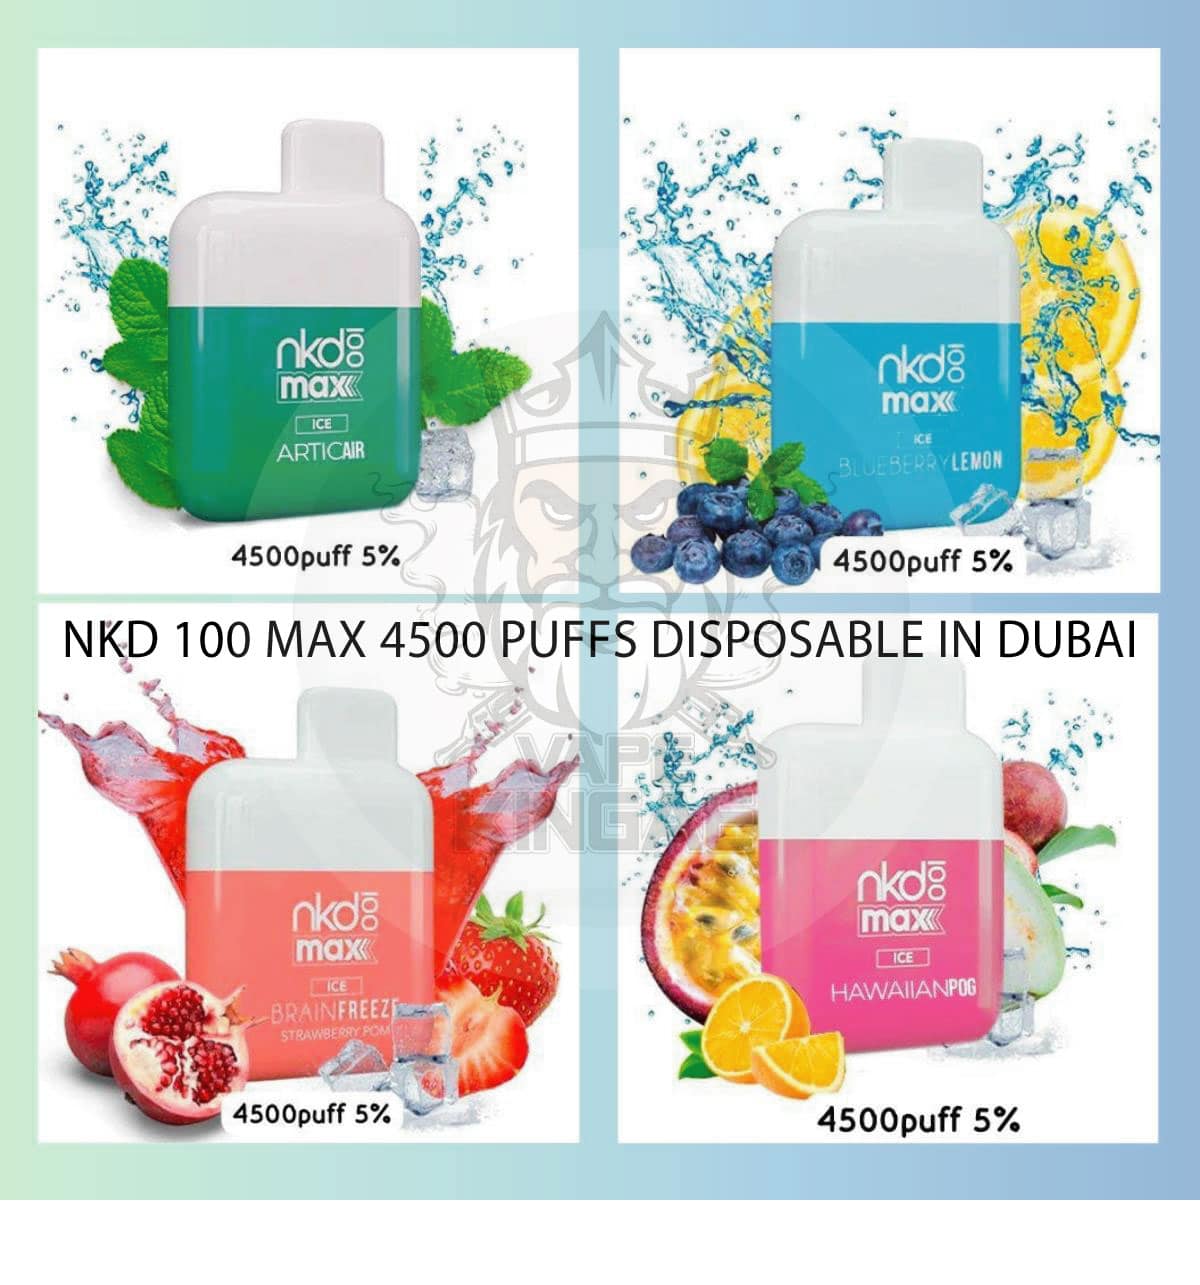 NKD 100 MAX 4500 PUFFS DISPOSABLE IN DUBAI